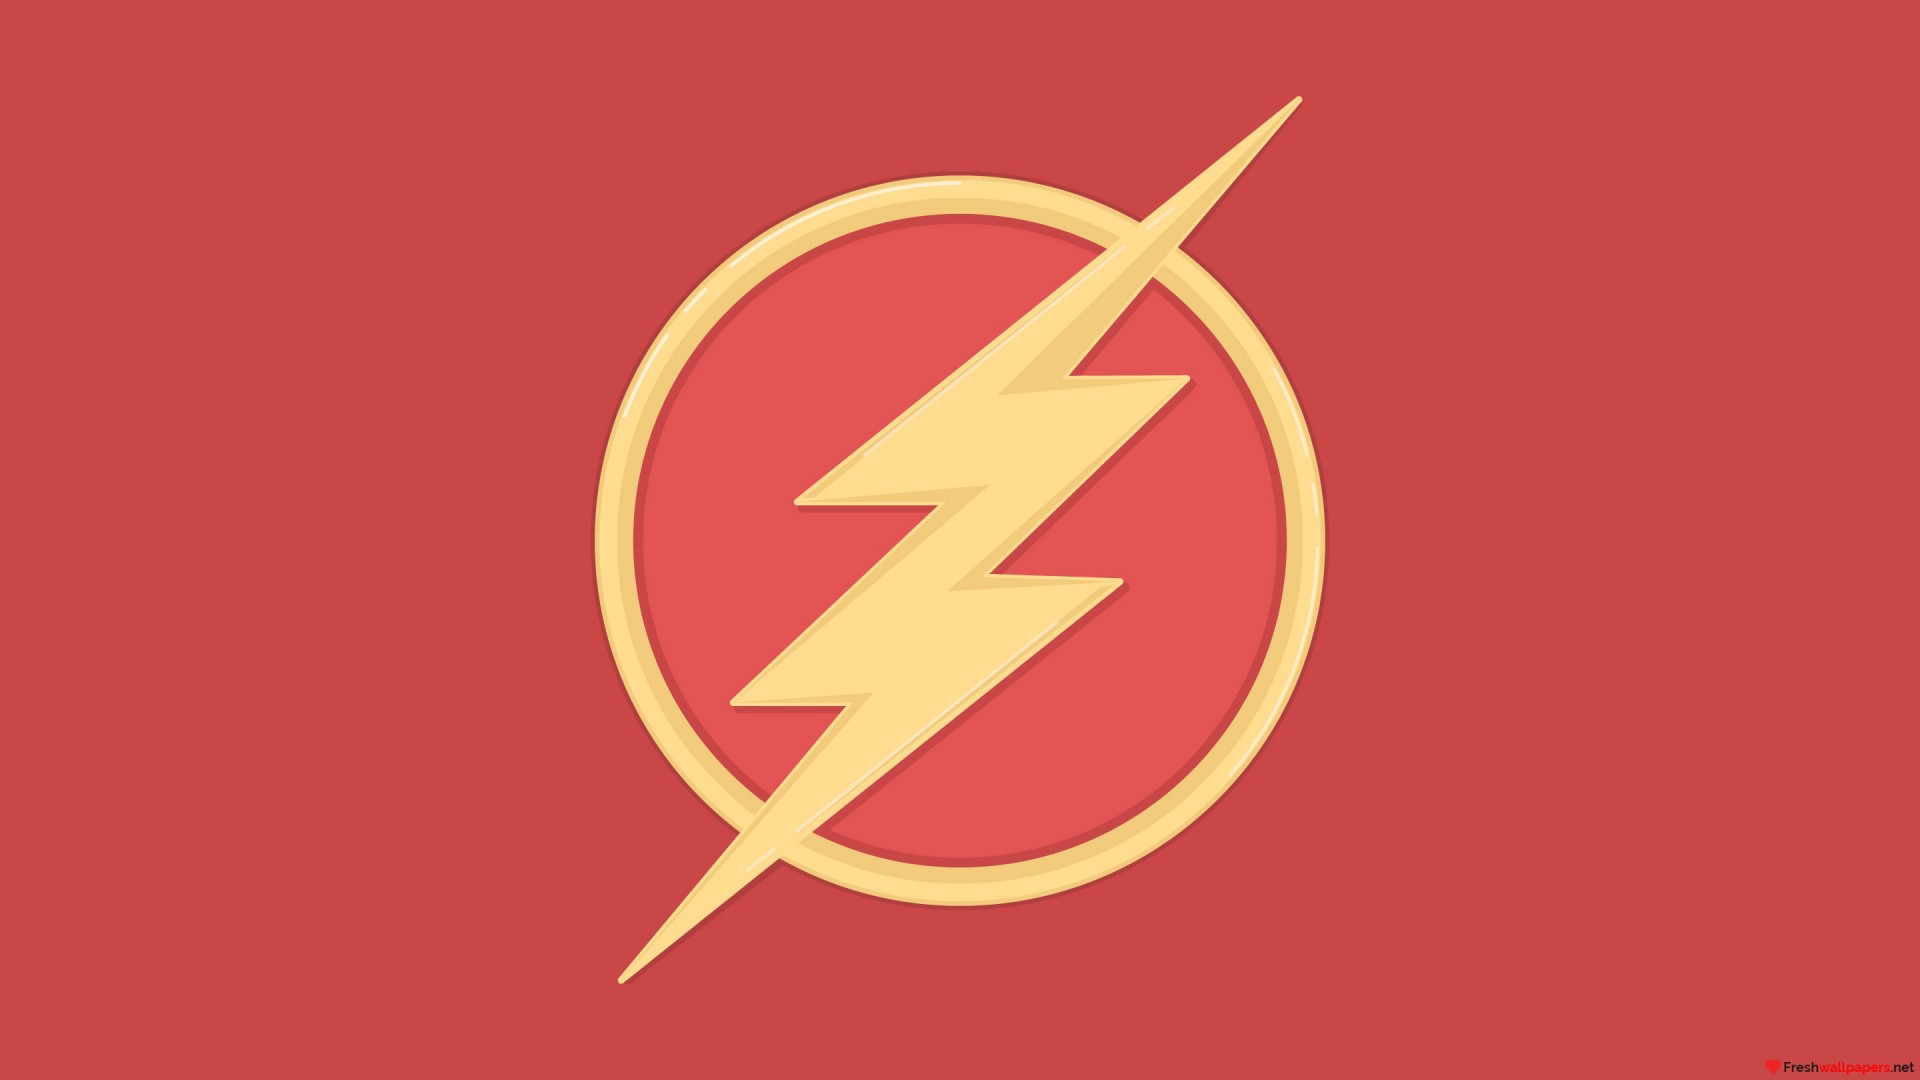 Flash Logo Wallpaper The Vector